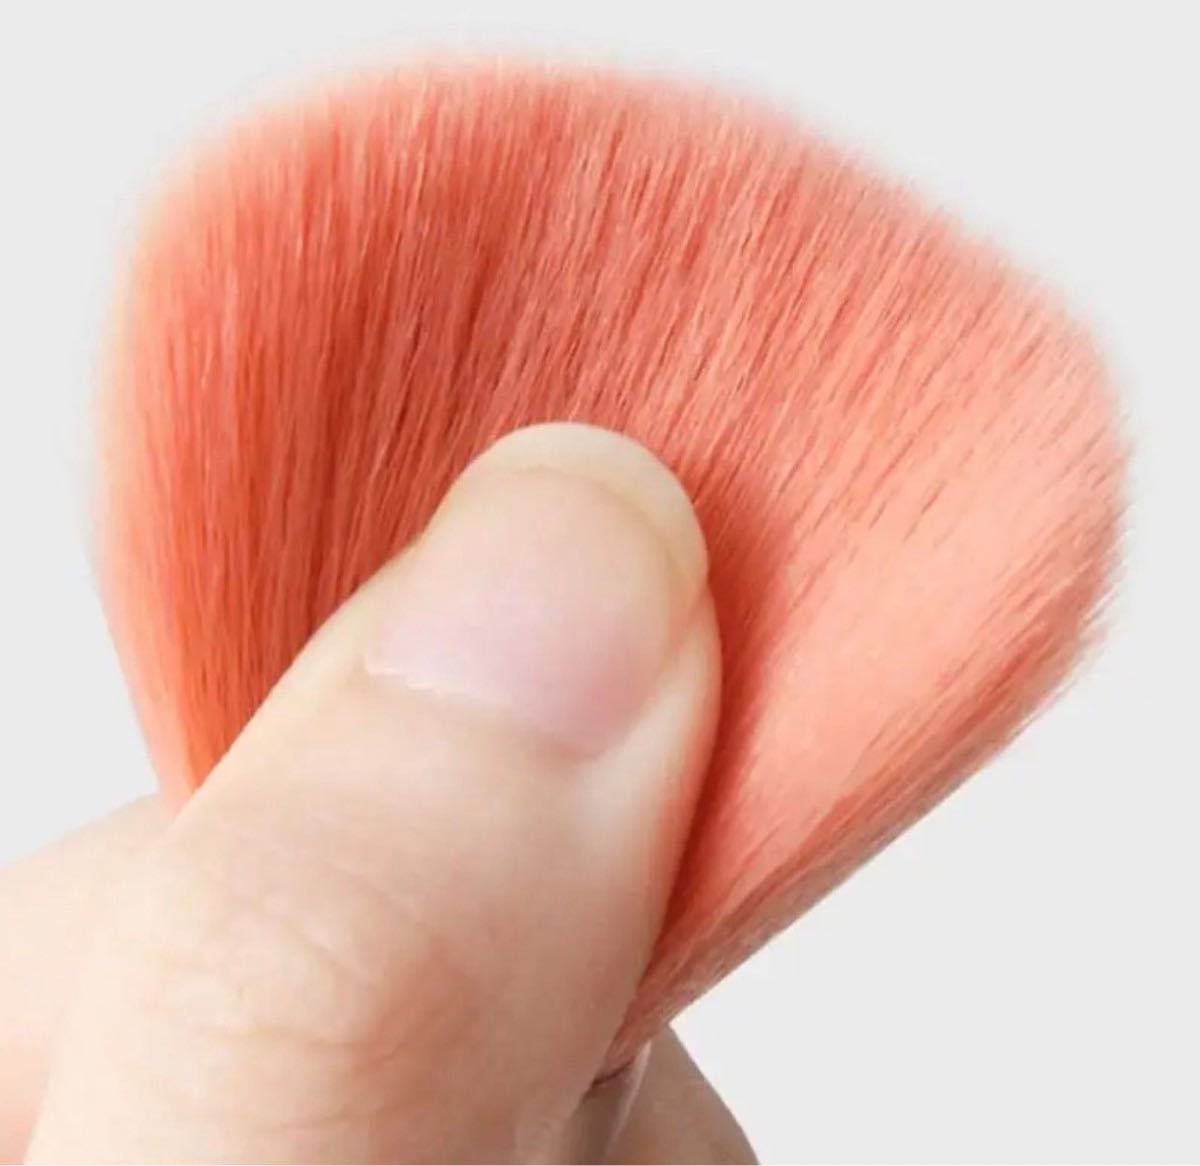 ★セール★ 化粧ブラシ 8本セット ピンク メイクブラシ 韓国コスメ 化粧道具